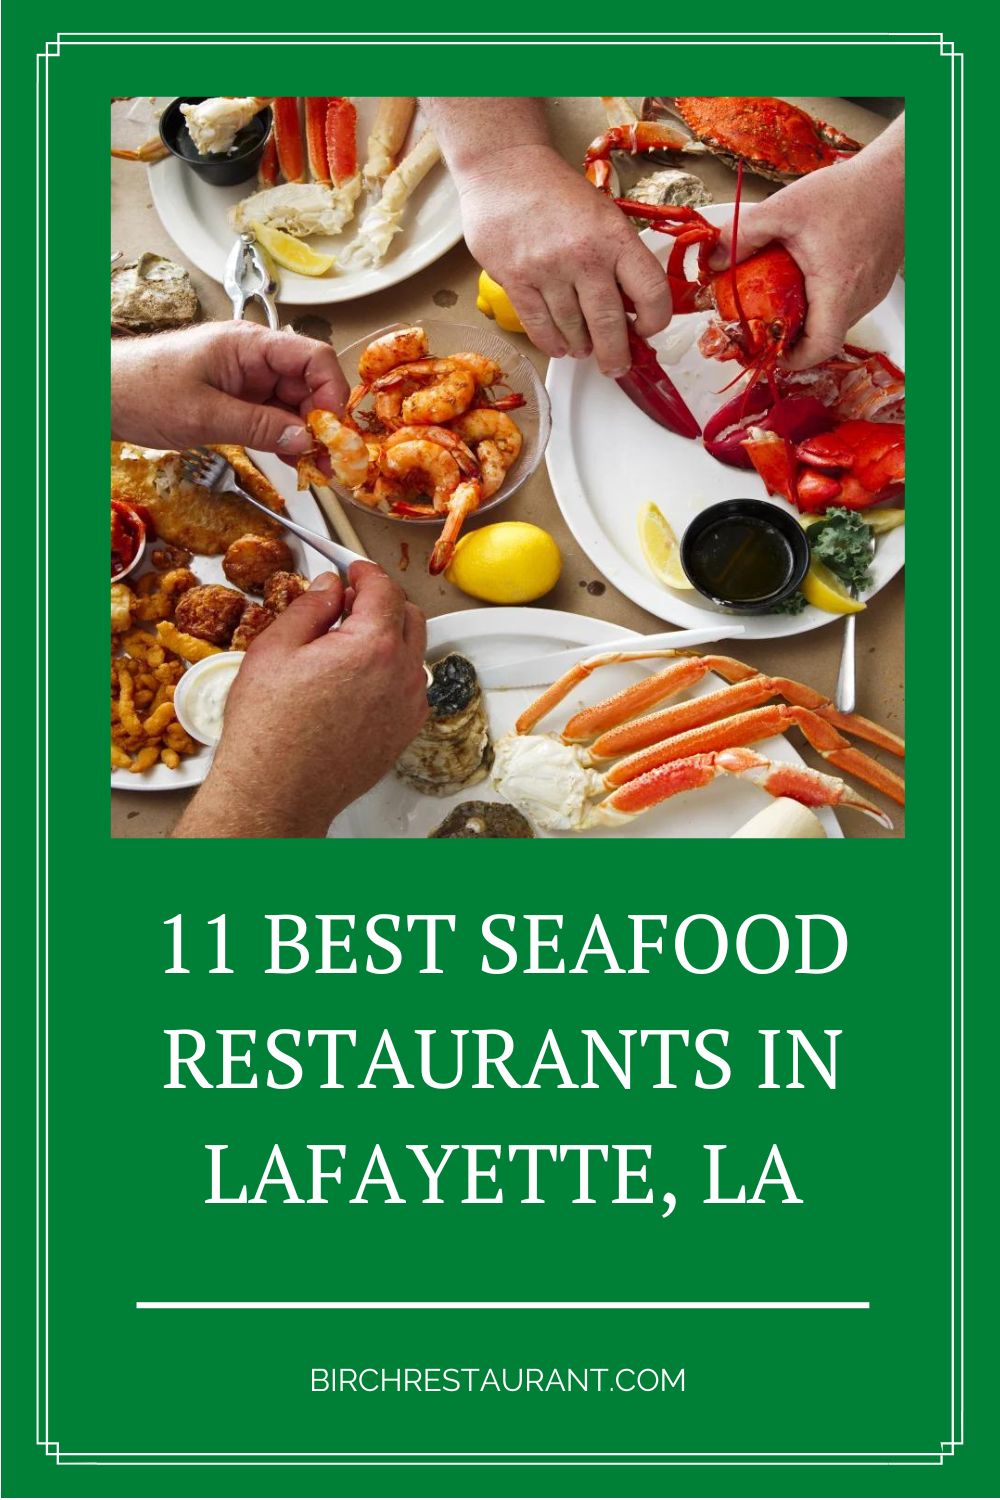 Best Seafood Restaurants in Lafayette